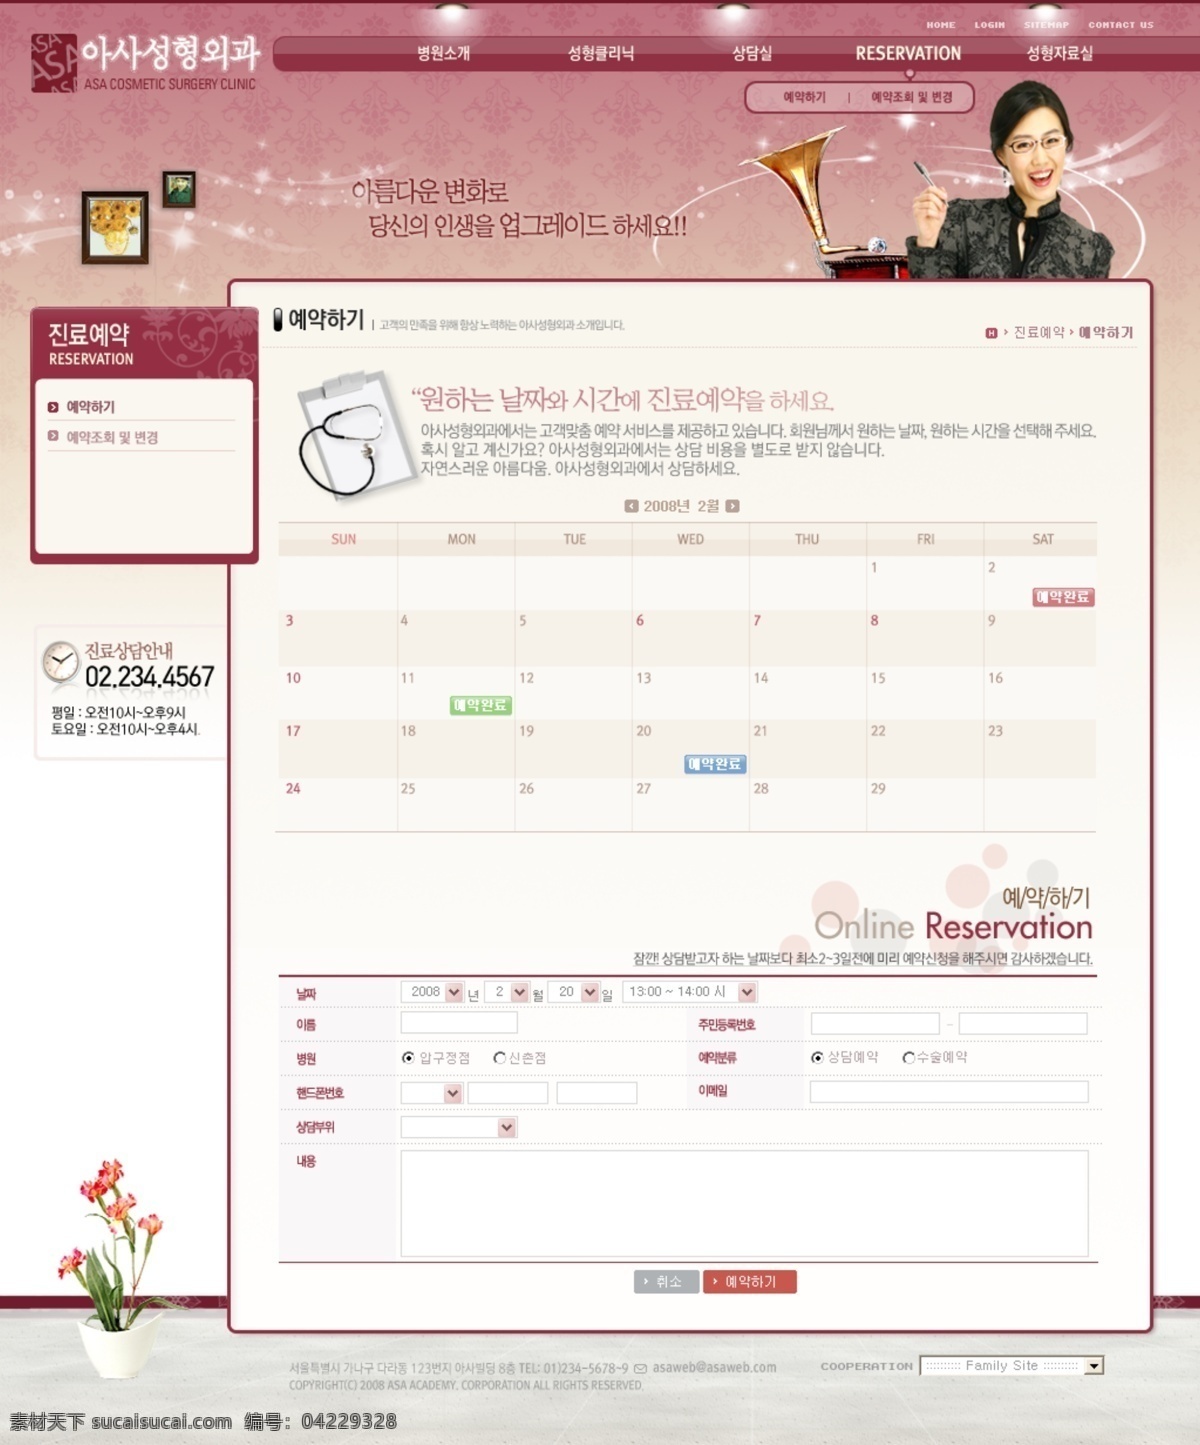 韩国 粉红色 风格 企业 网页模板 图 六 酆 焐 绺 衿 笠 低 衬 逋 剂 网页素材